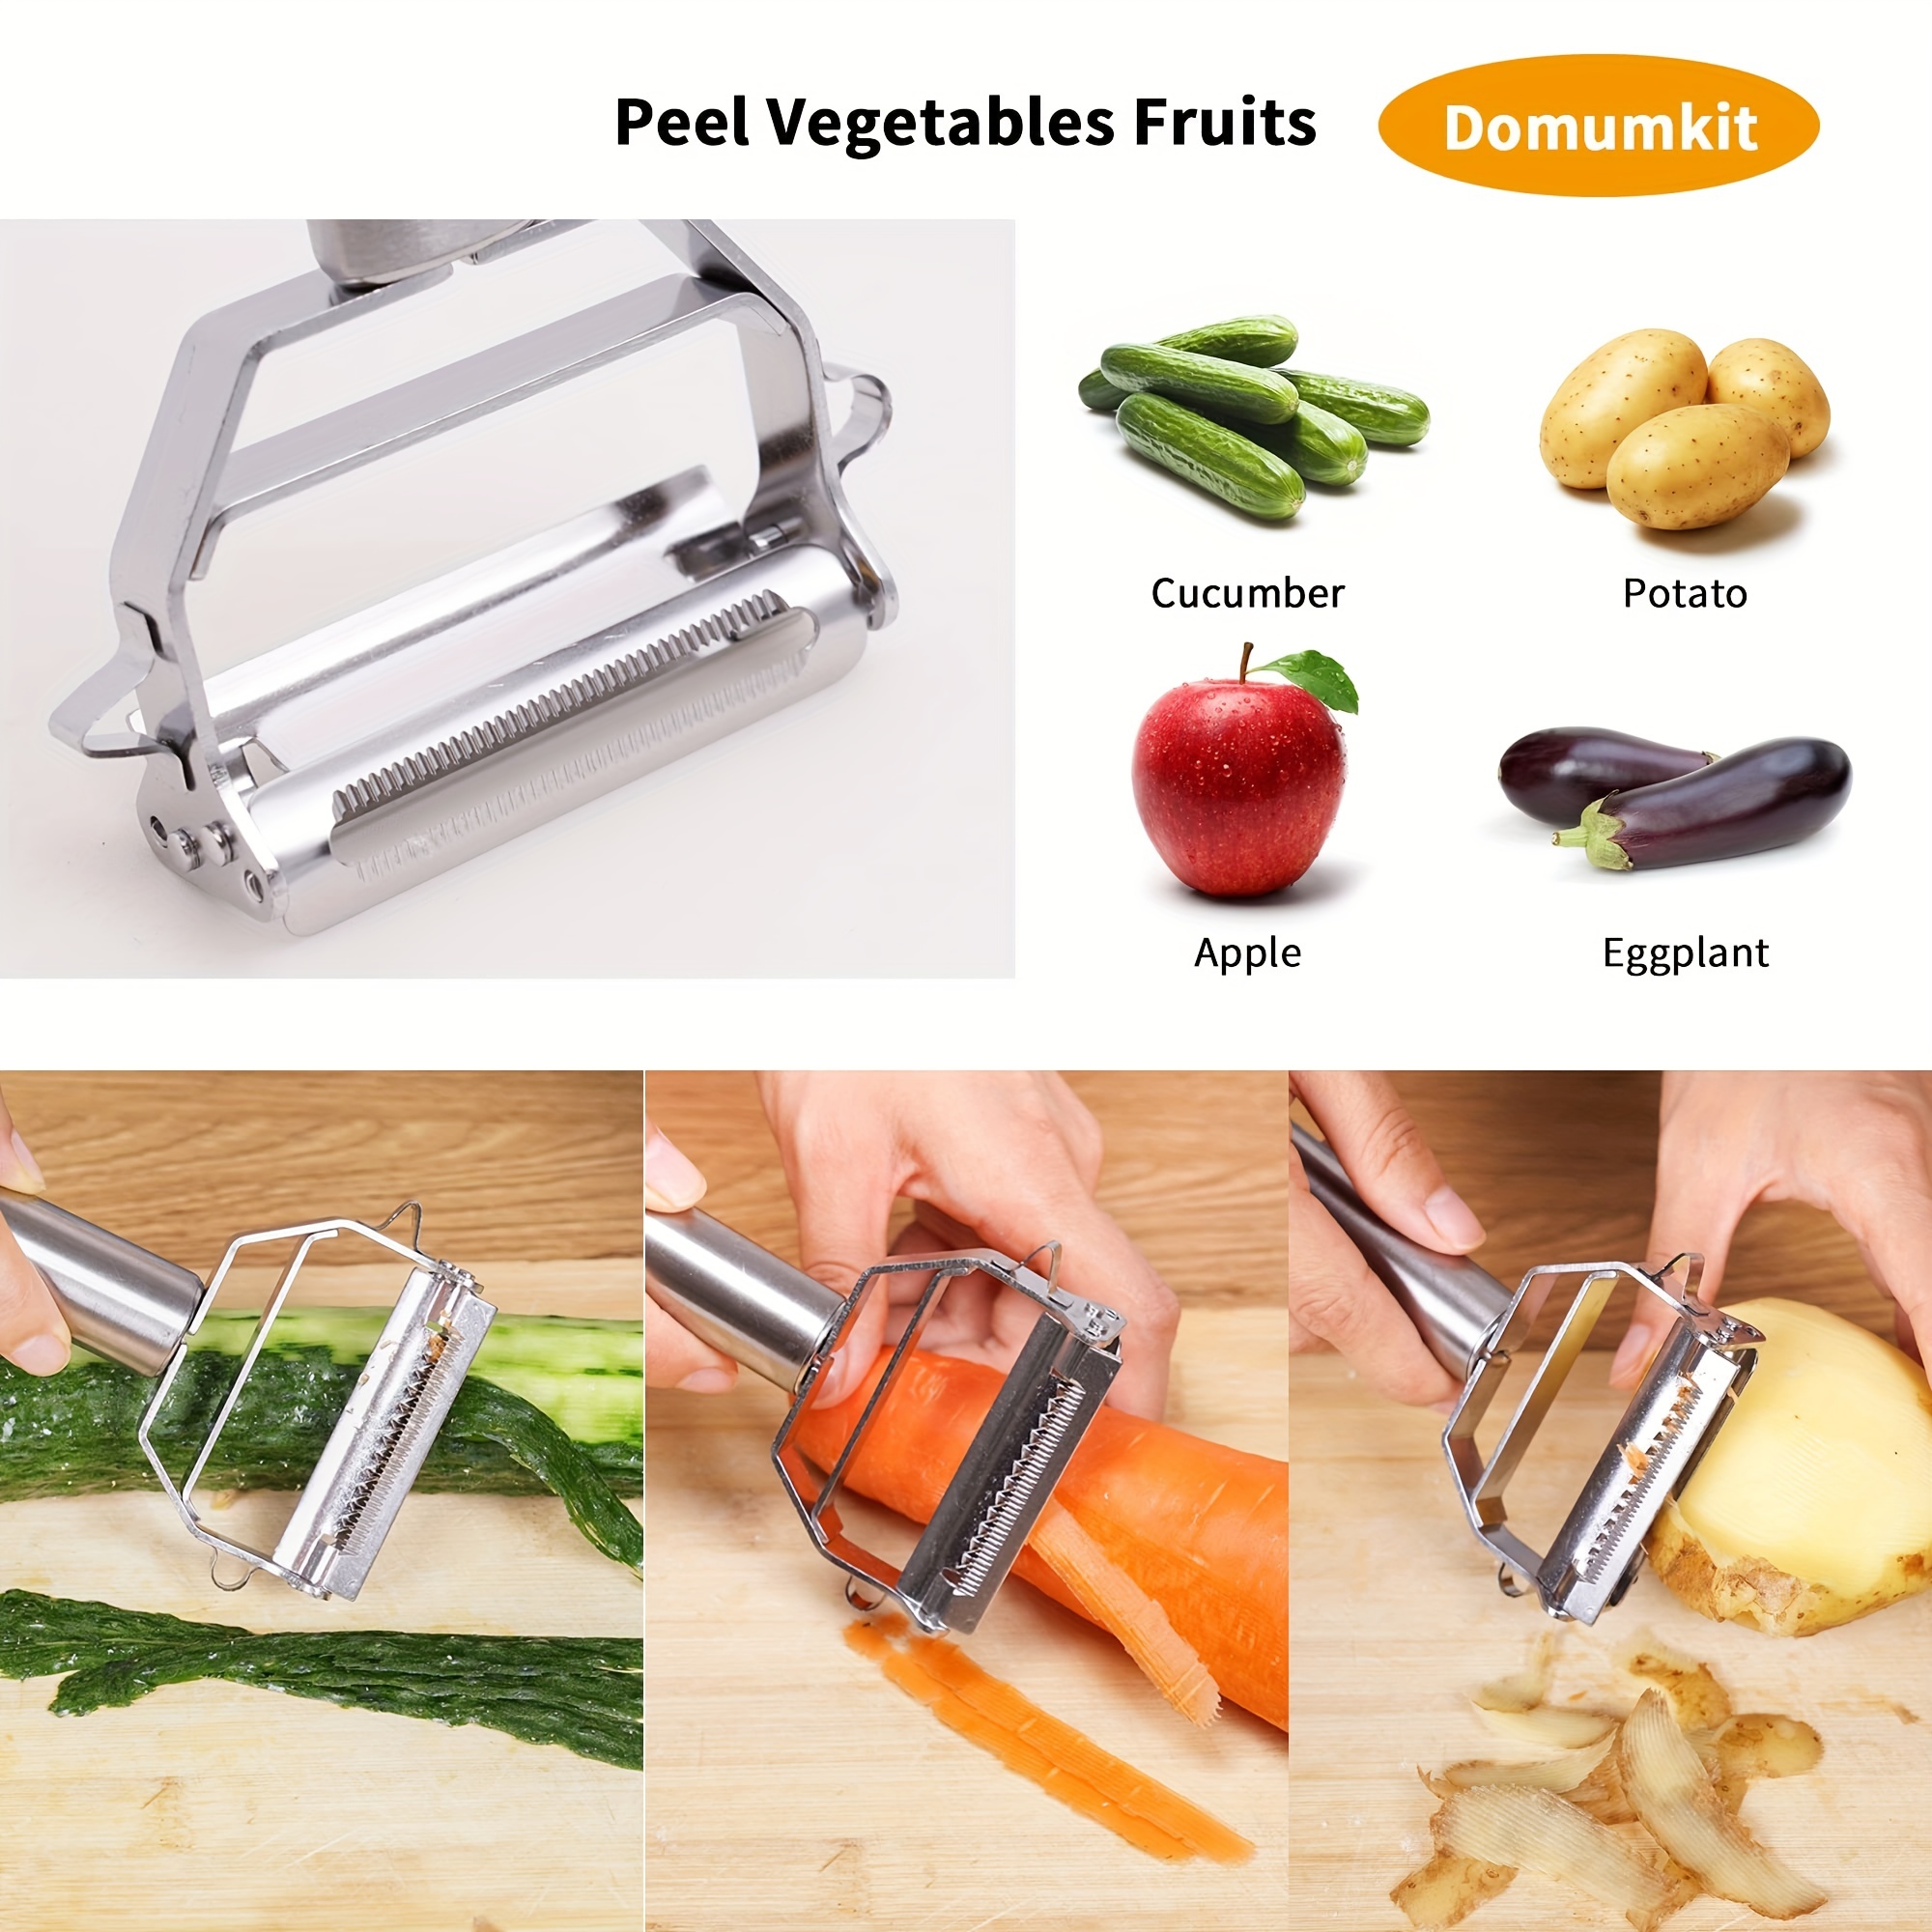 Melitta Stainless Steel Dual Blade Vegetable Peeler - Commercial Grade  Julienne Cutter, Slicer, Shredder, Scraper - Fruit, Potatoes, Carrot,  Cucumber